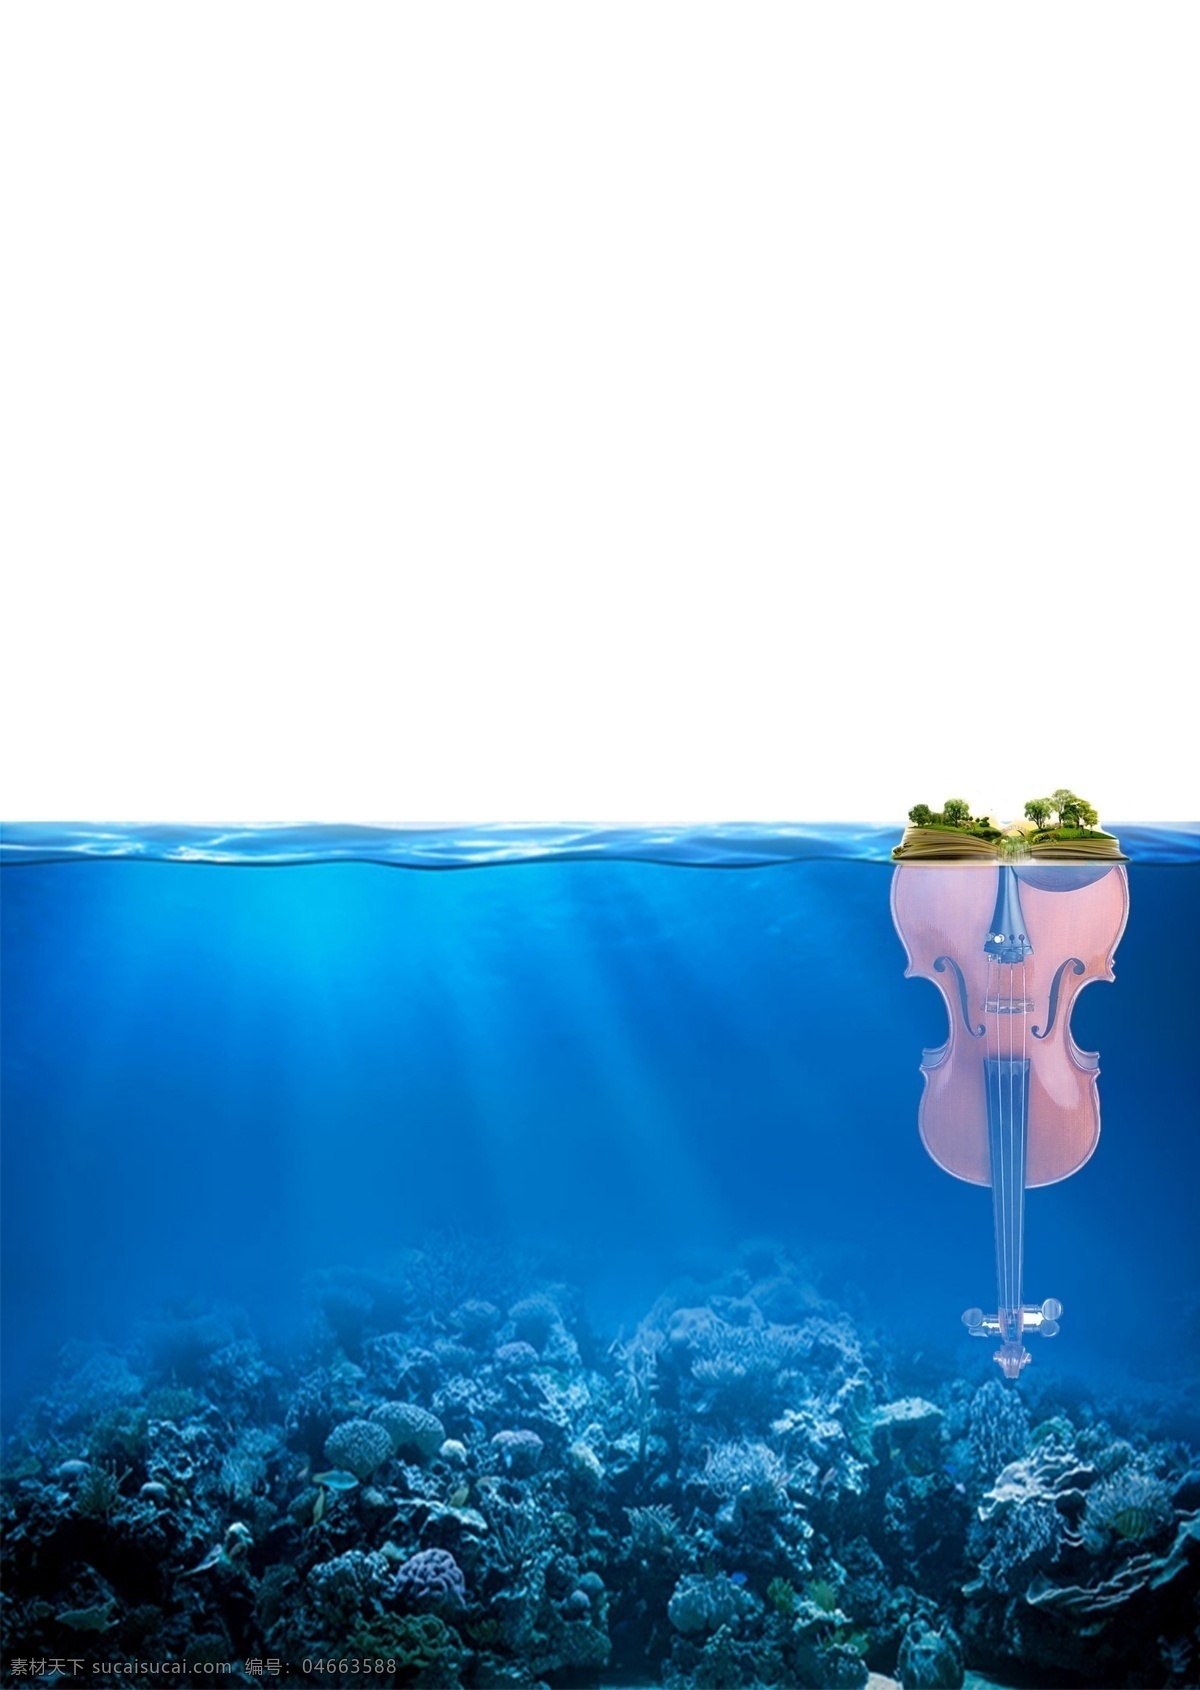 海中 小提琴 高清 背景 海报背景模板 小岛 书 海底 招聘 海报 海